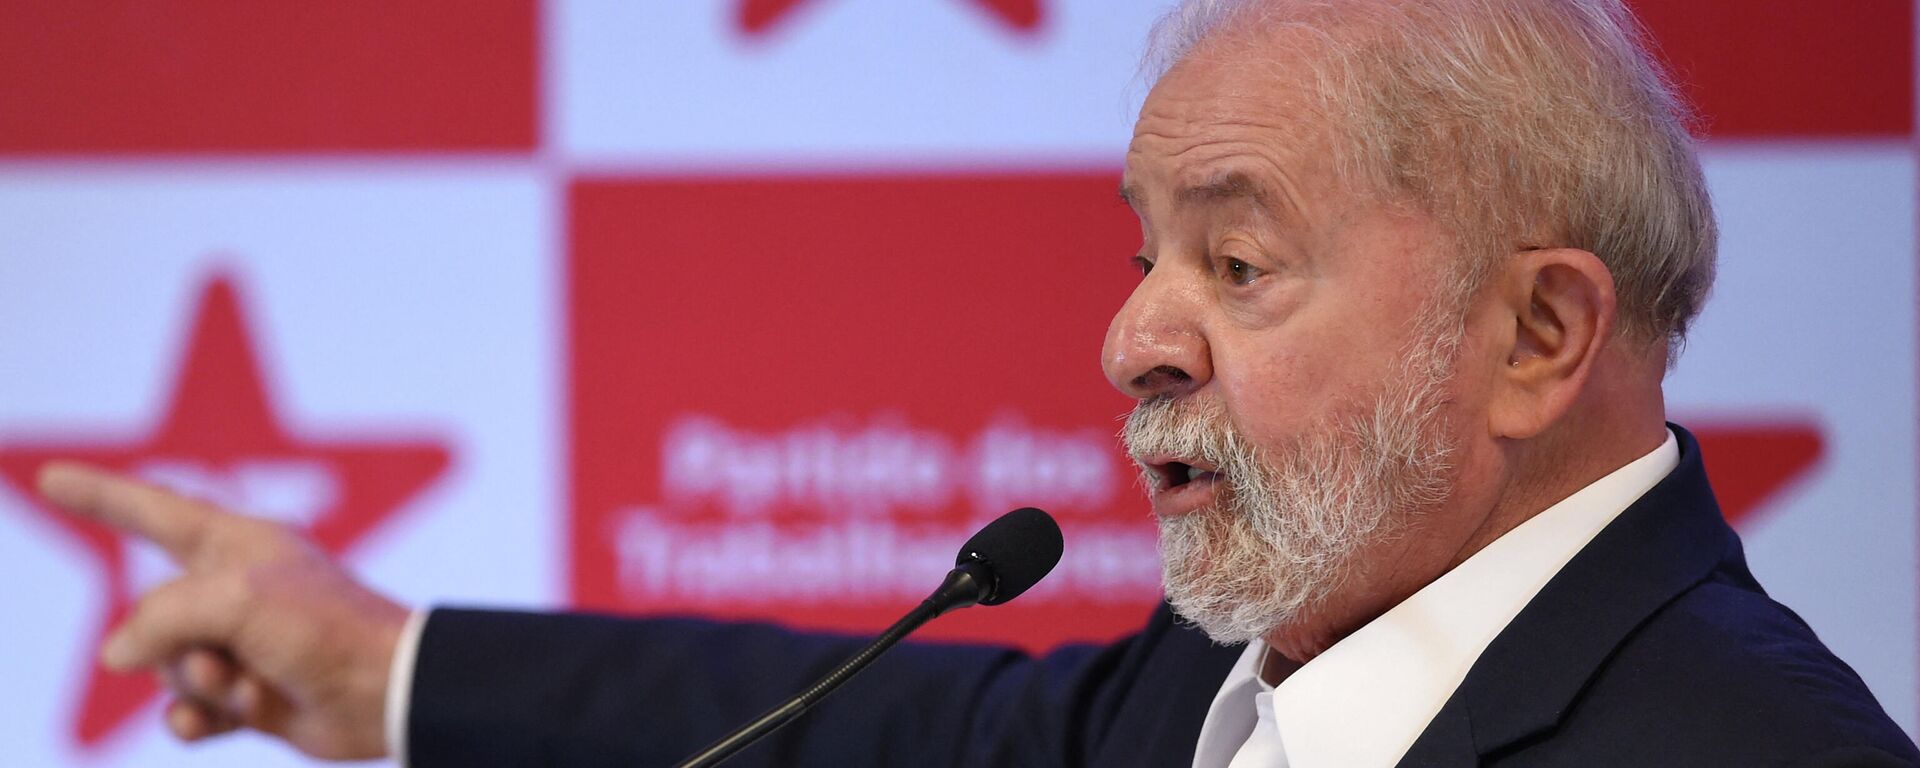 O ex-presidente Luiz Inácio Lula da Silva fala durante entrevista coletiva em Brasília, em 8 de outubro de 2021 - Sputnik Brasil, 1920, 26.11.2021